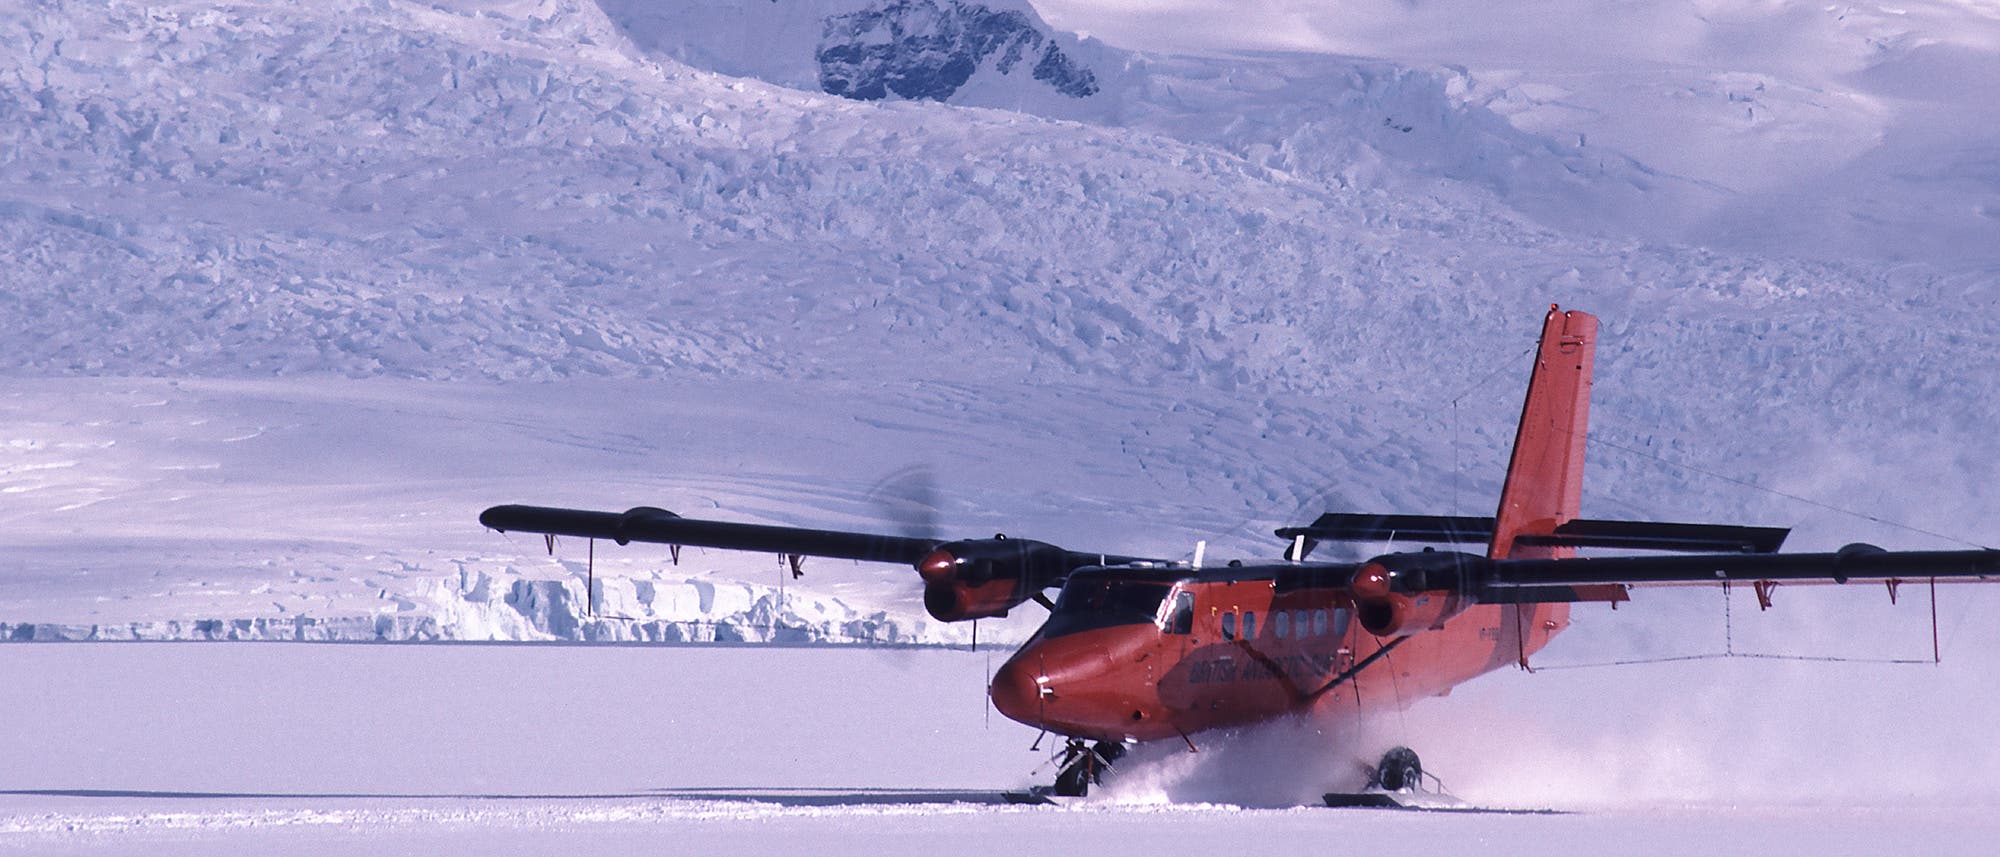 Twin Otter können für Landungen auf Schnee oder im Wasser umgerüstet werden. Zwei Flugzeuge dieses Typs sind in die Antarktis unterwegs.